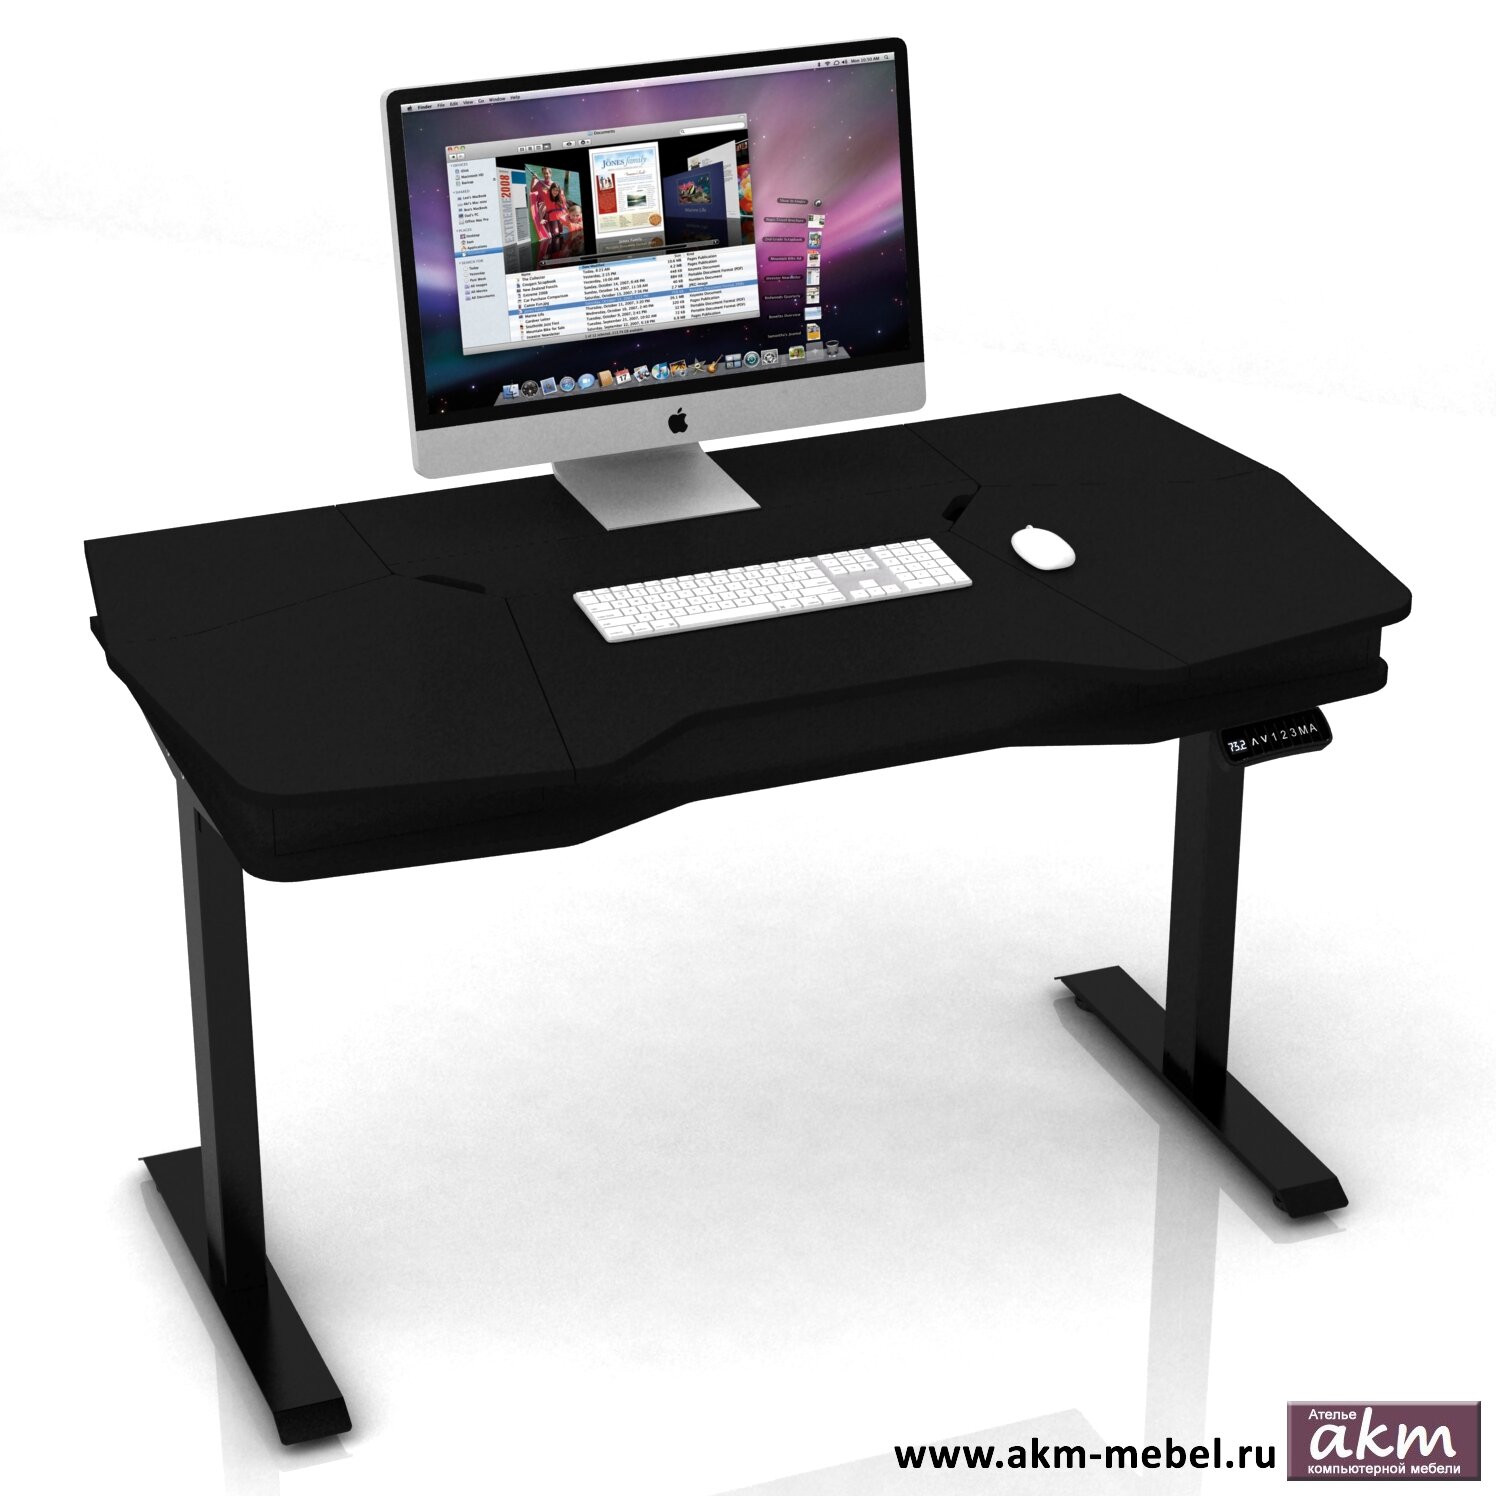 Геймерские игровые столы и кресла Регулируемый по высоте компьютерный стол с электроприводом DX ELECTRIC VEGAS чёрный